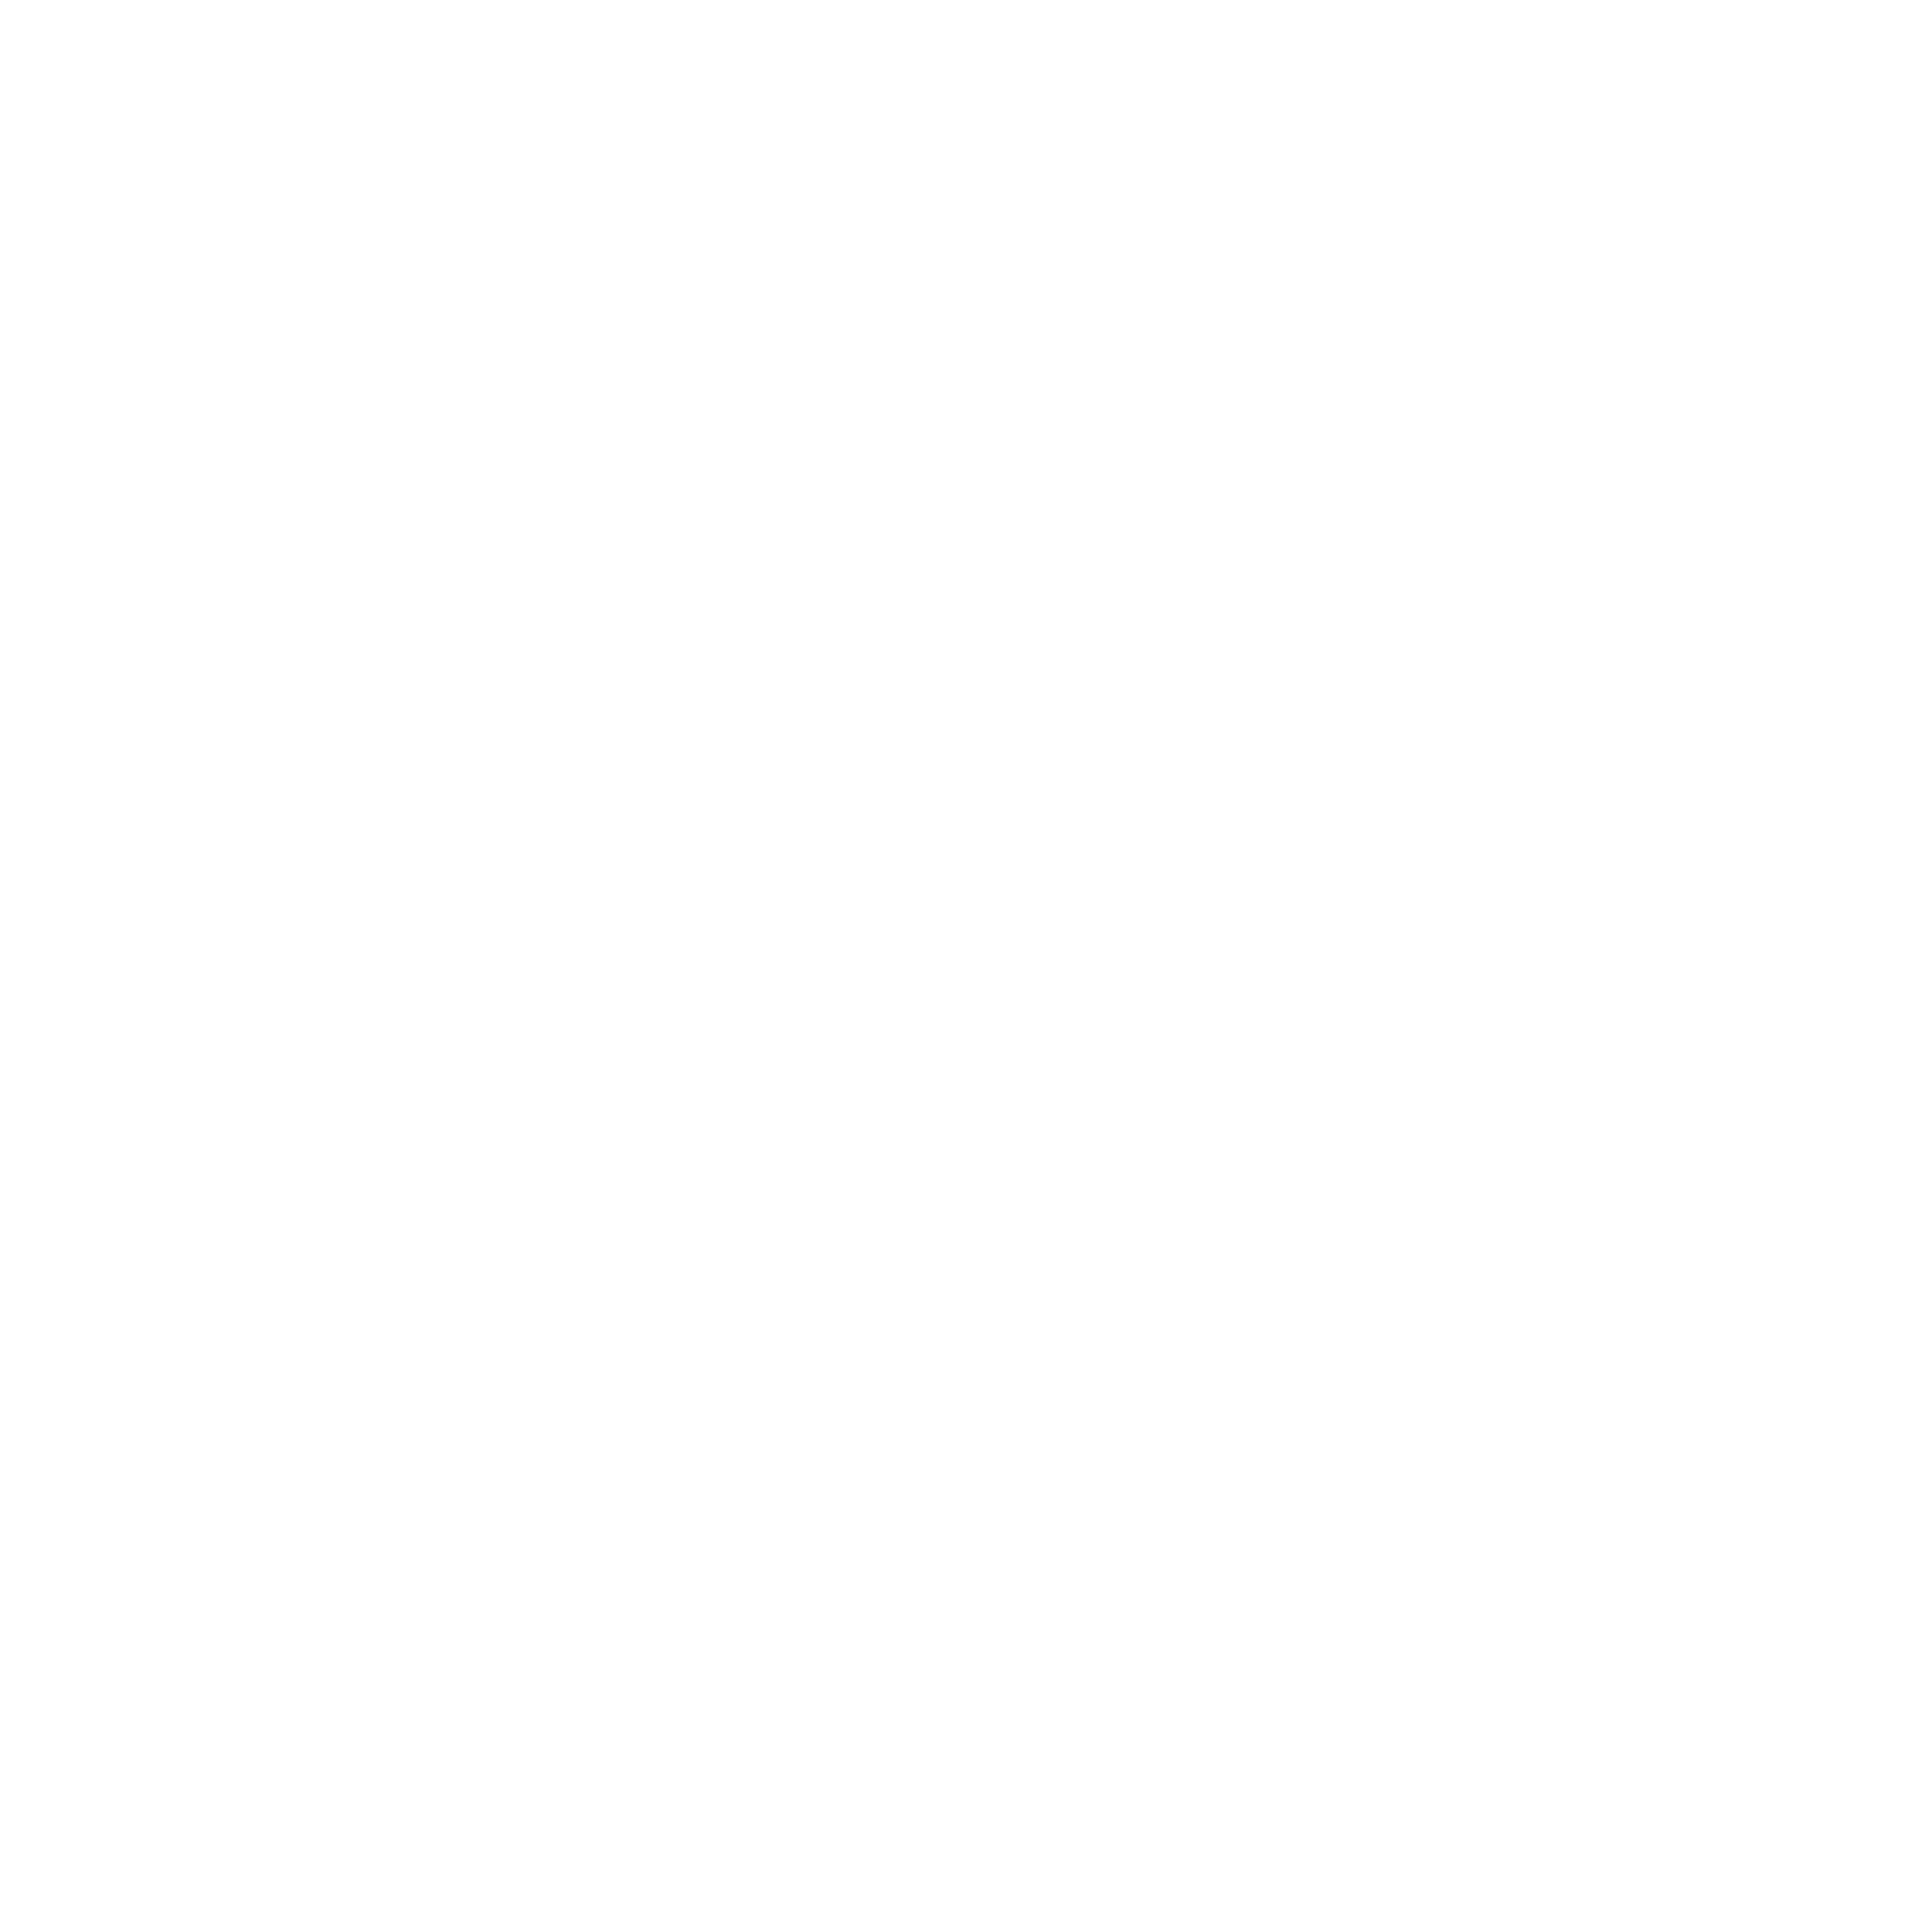 Jimmy Deane's